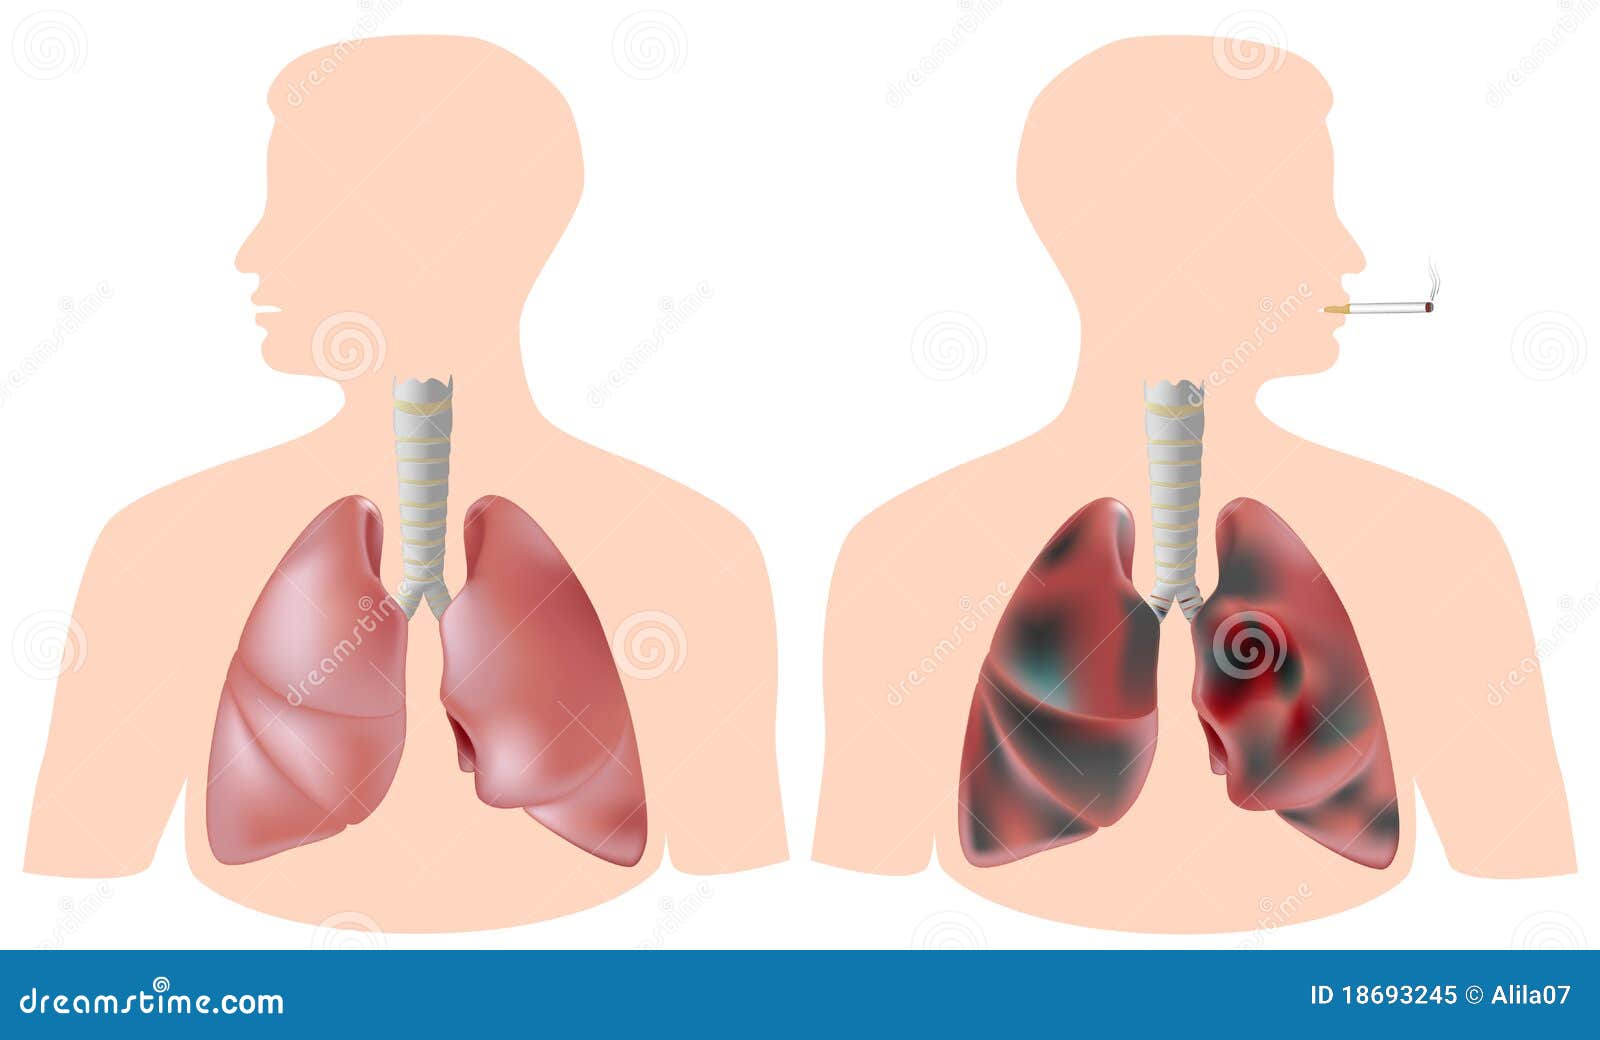 Le Poumon Du Fumeur Avec La Tumeur Contre Le Poumon Sain Illustration De Vecteur Illustration Du Bronches Bronchiole